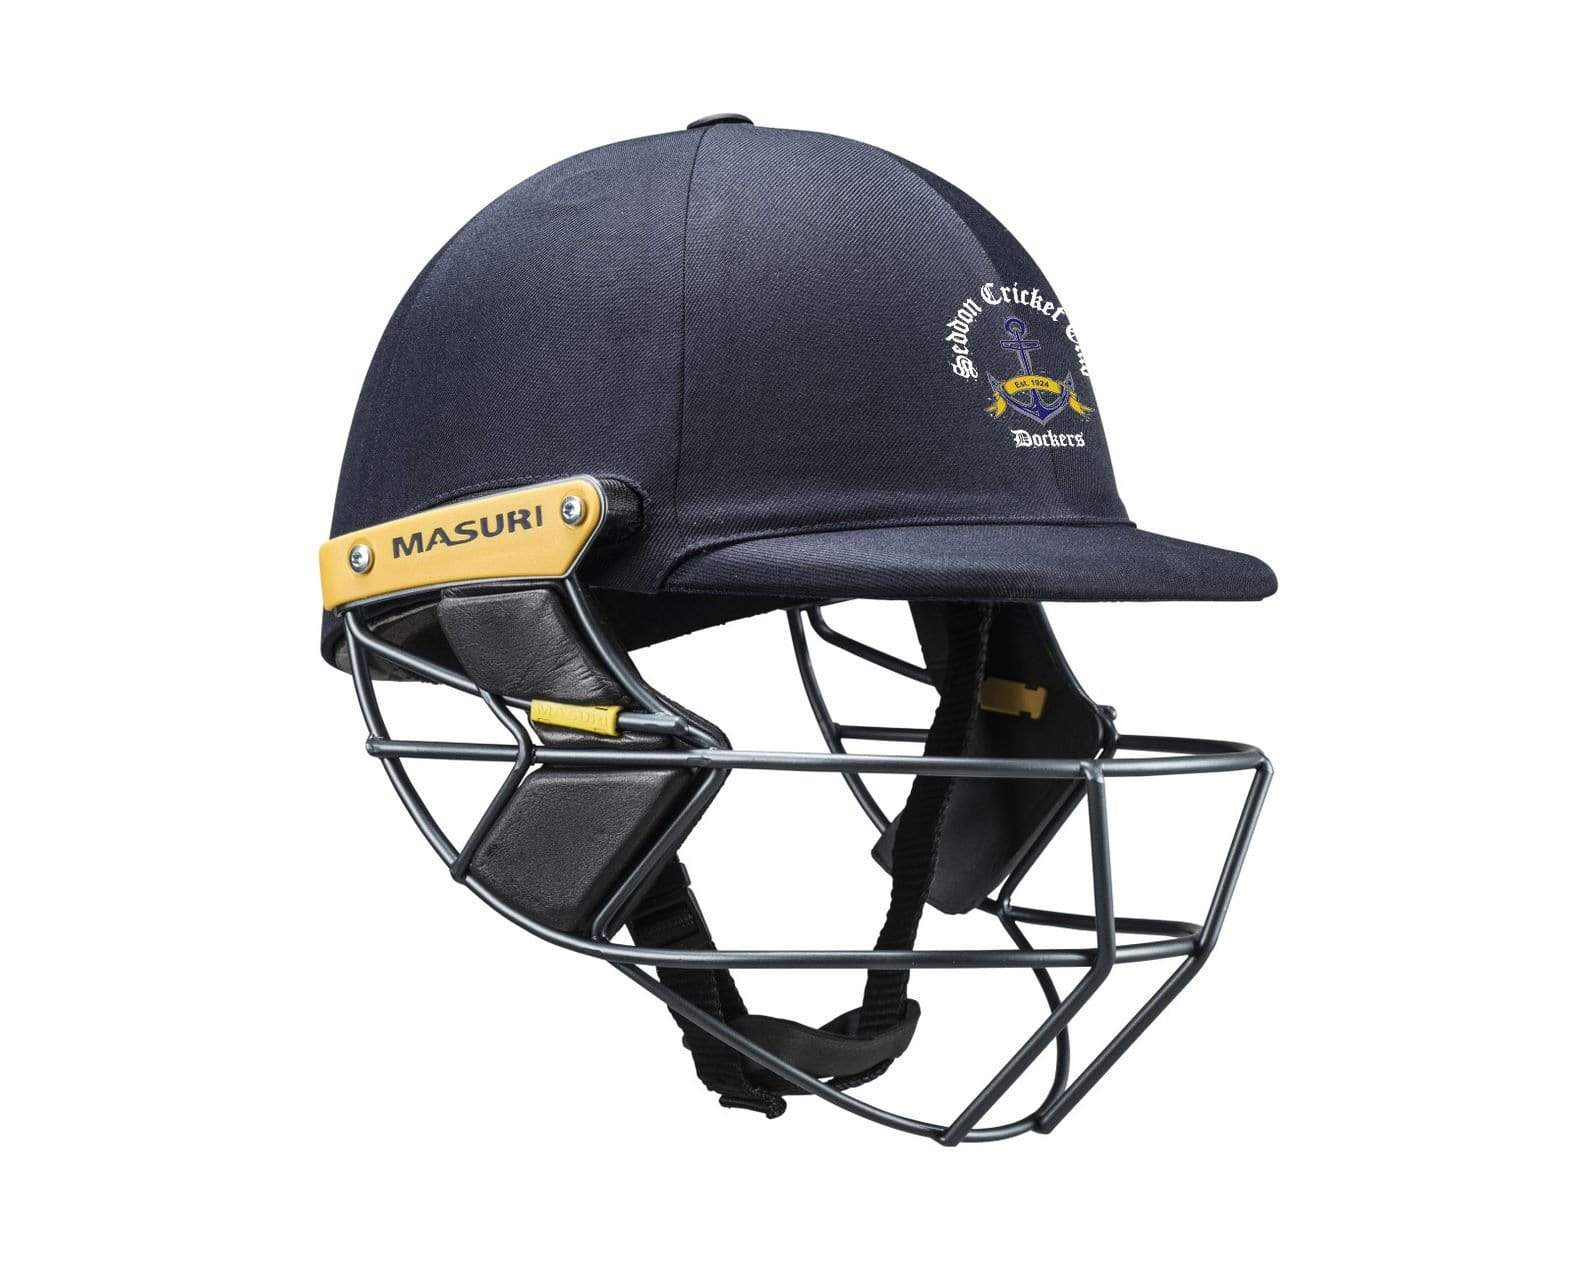 Masuri Club Helmet Seddon Cricket Club Helmet